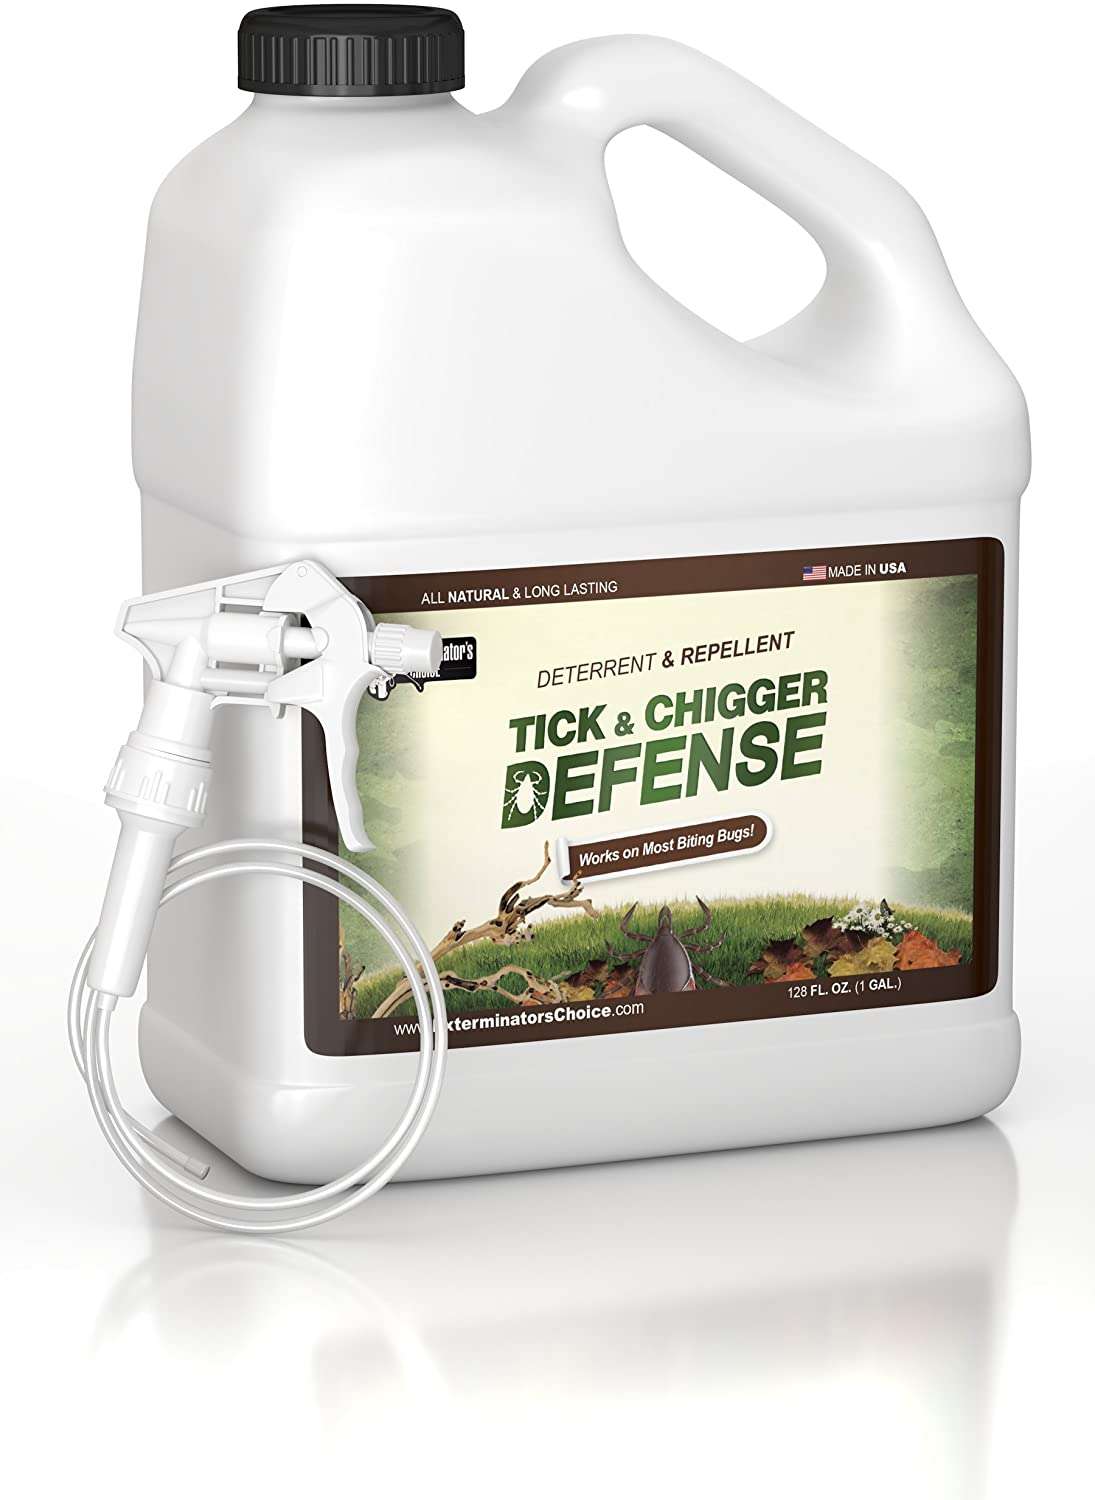 Amazon.com : Exterminators Choice Tick and Chigger Defense Repellent ...